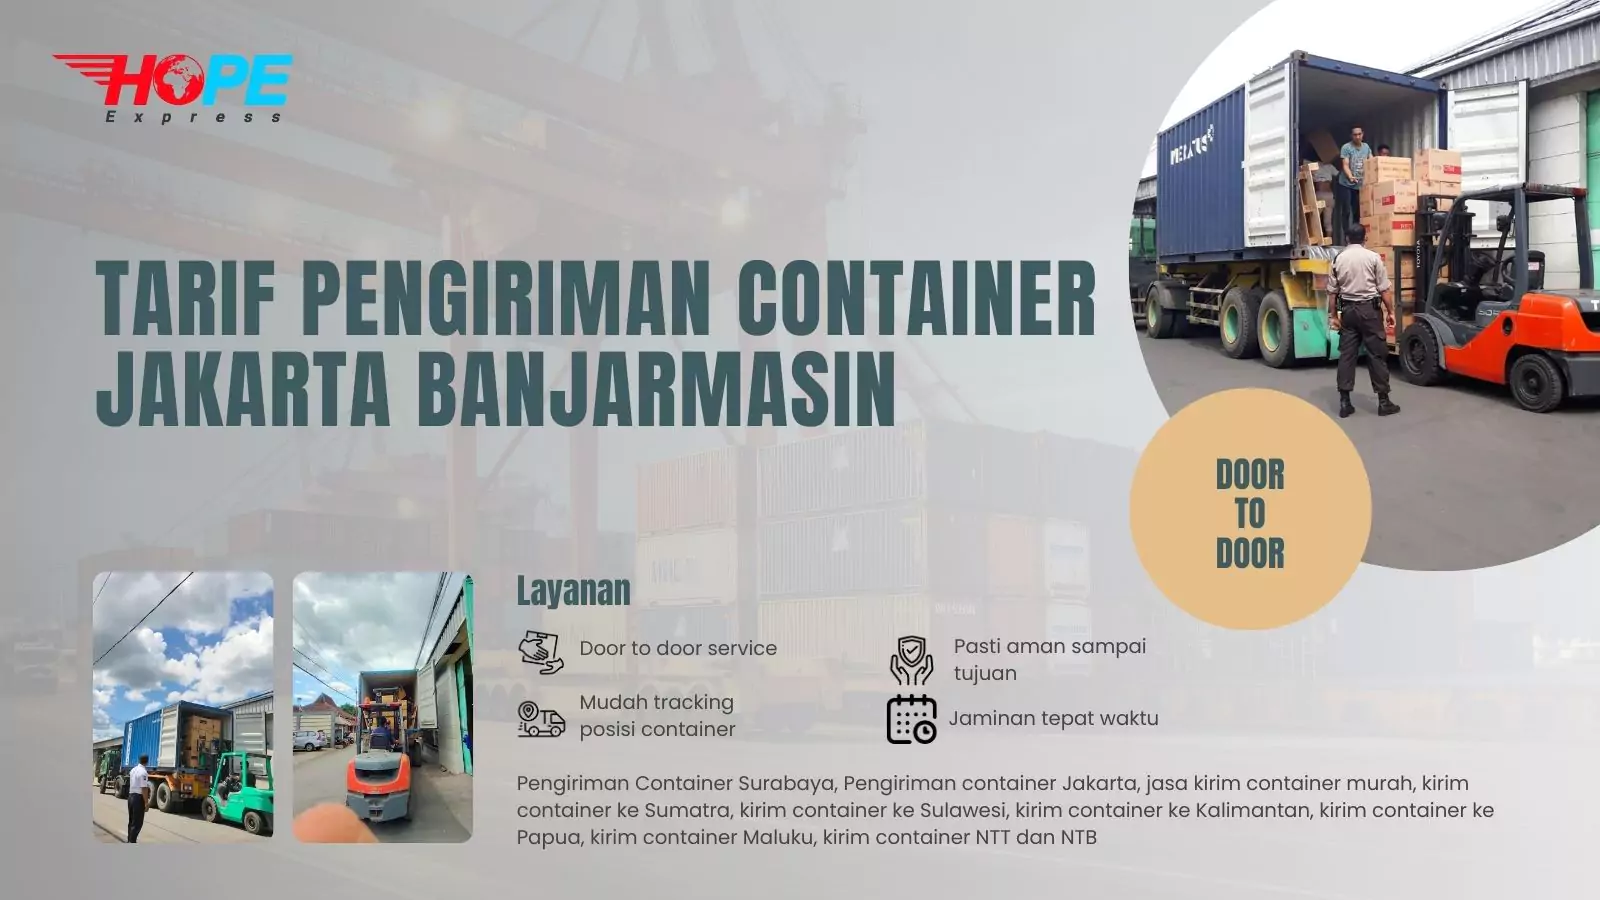 Tarif Pengiriman Container Jakarta Banjarmasin